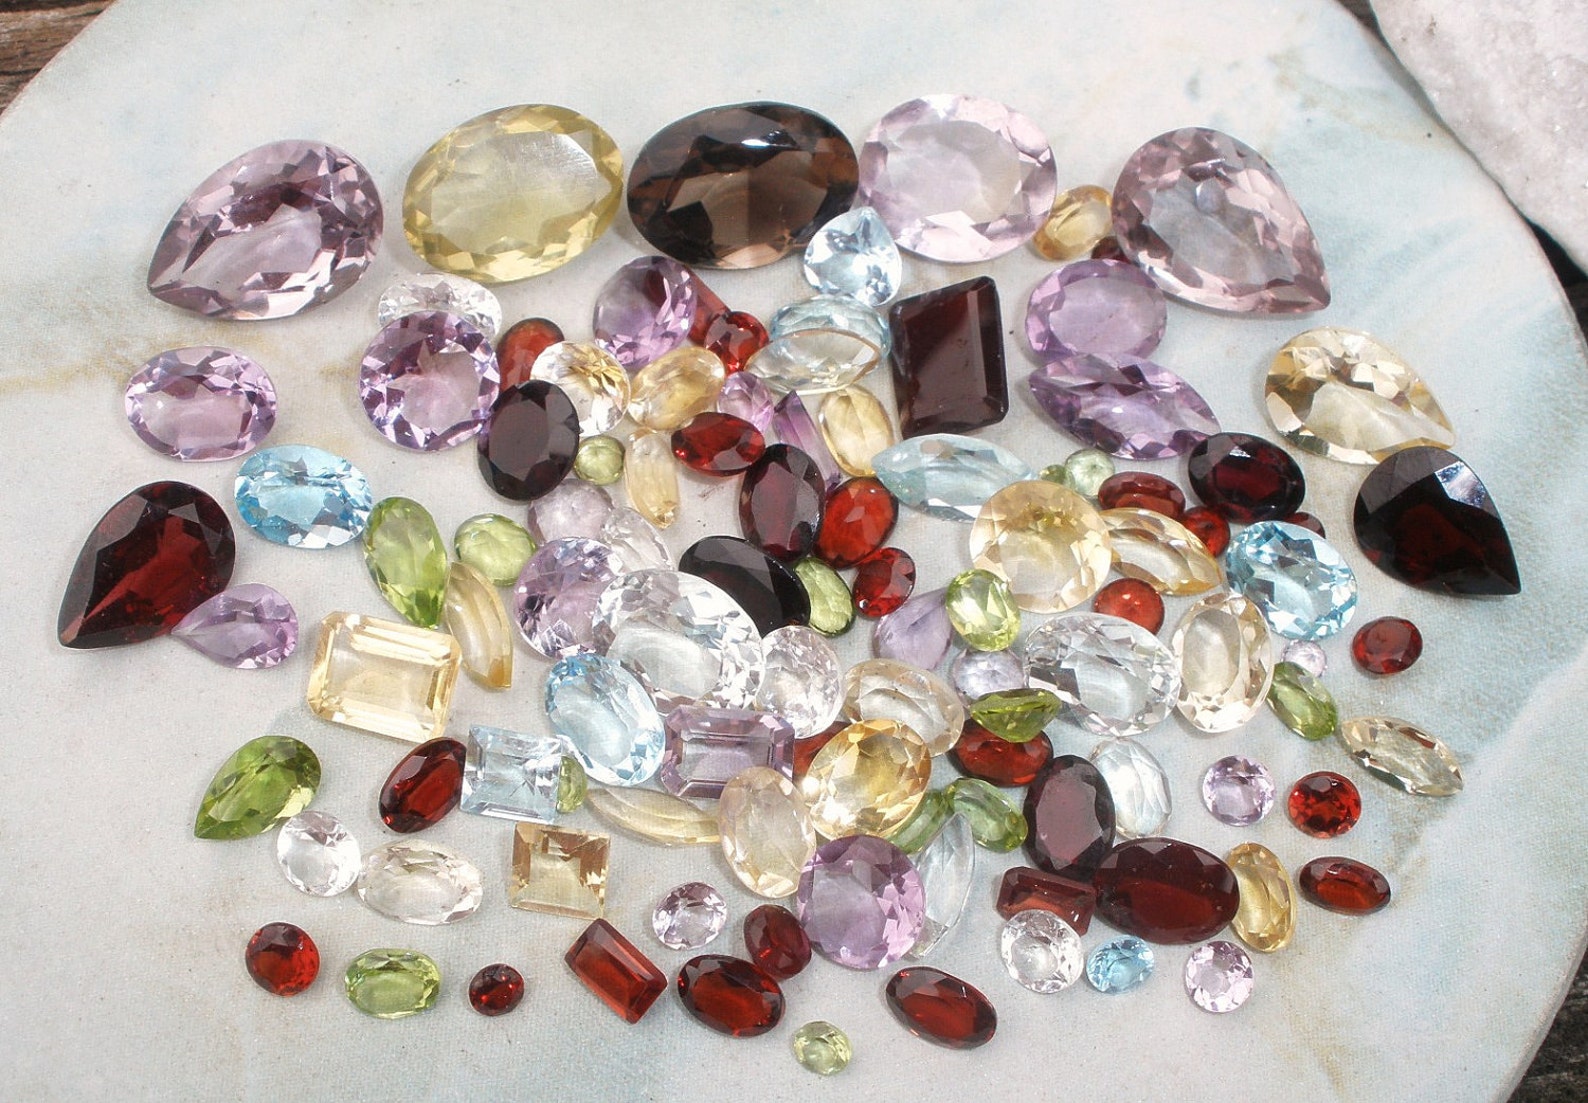 Over 100 Carats of Loose Natural Semiprecious Gemstones - Etsy